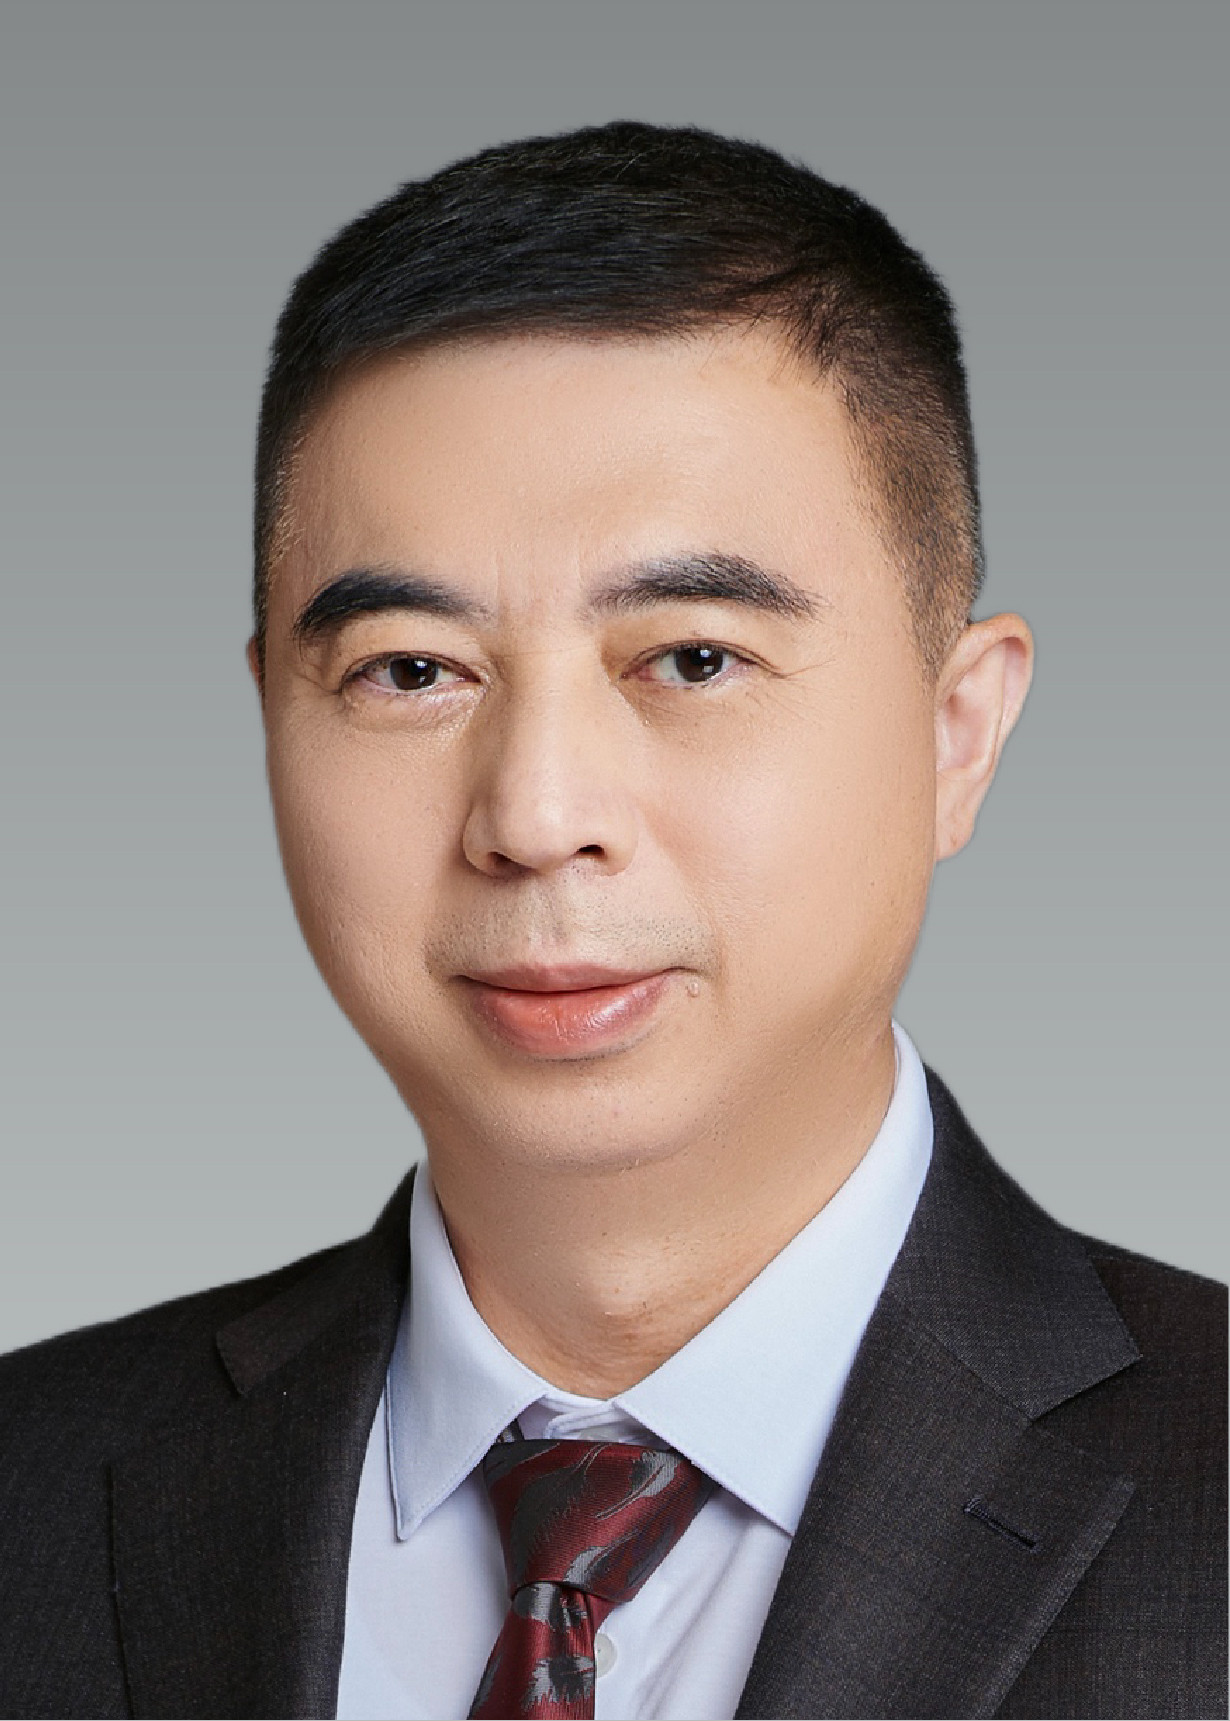 Wang Jianli